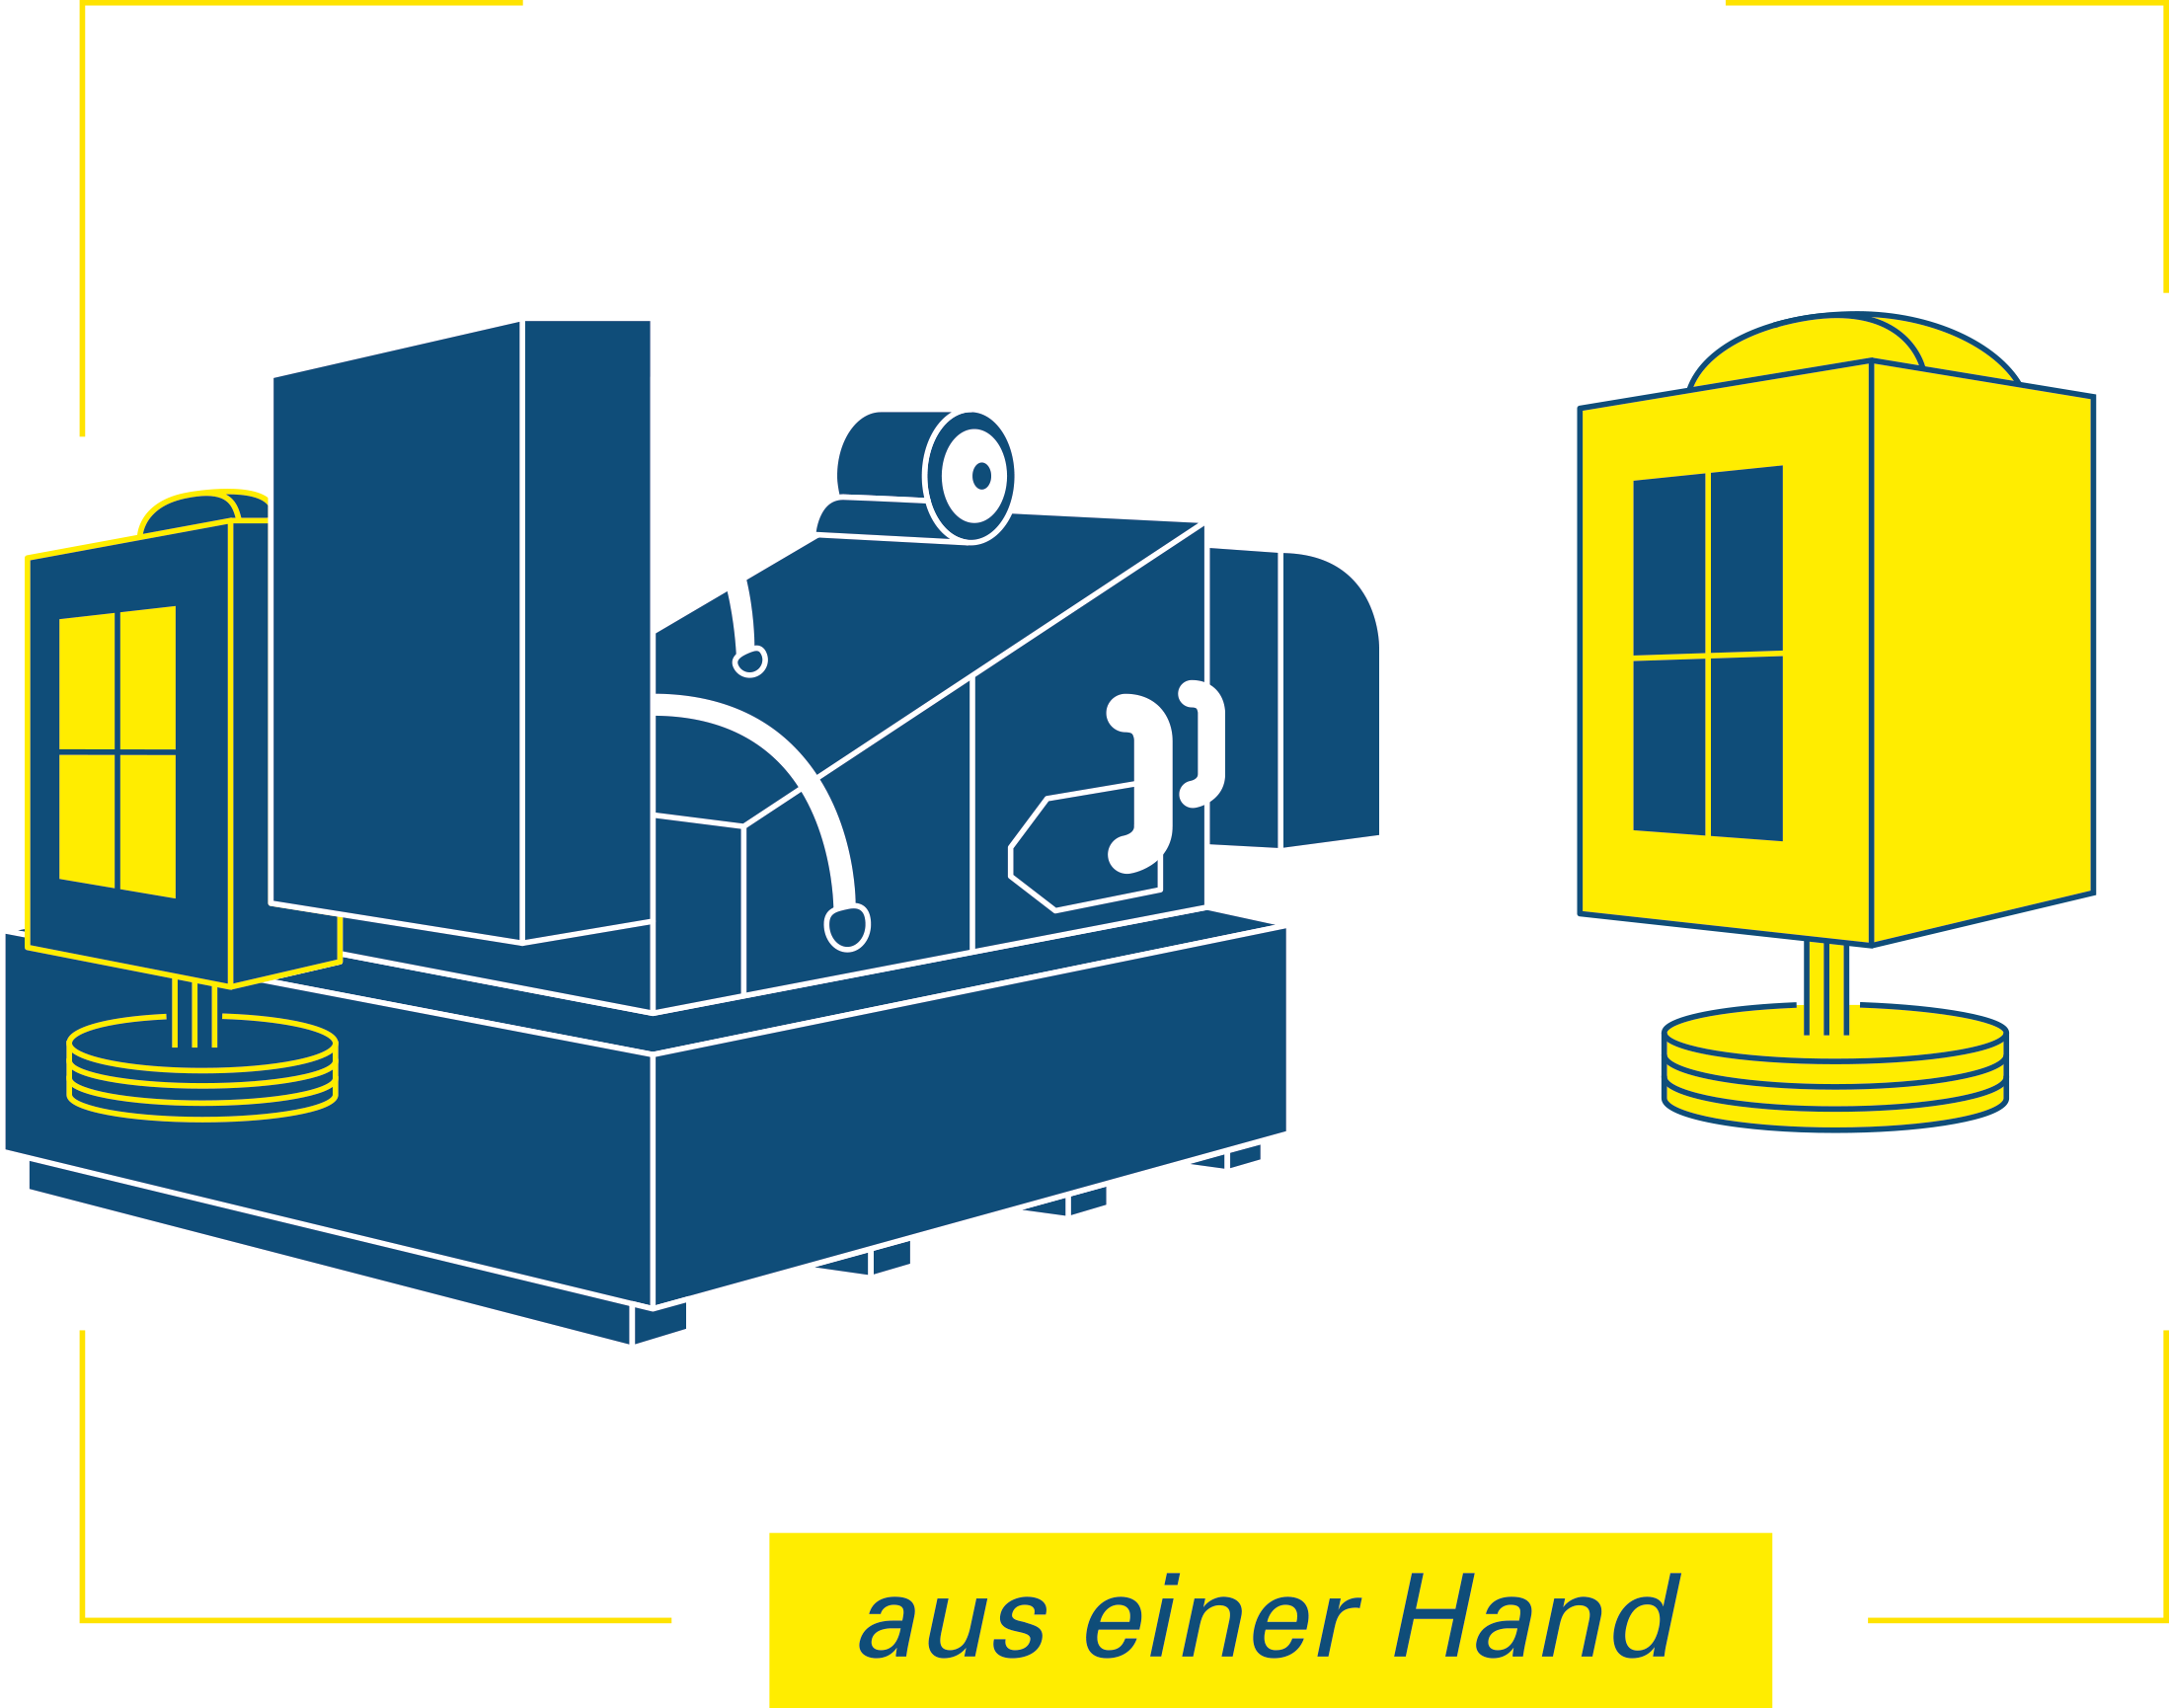 德國 HOFFMANN 過濾冷卻機台檢驗及備品維修服務